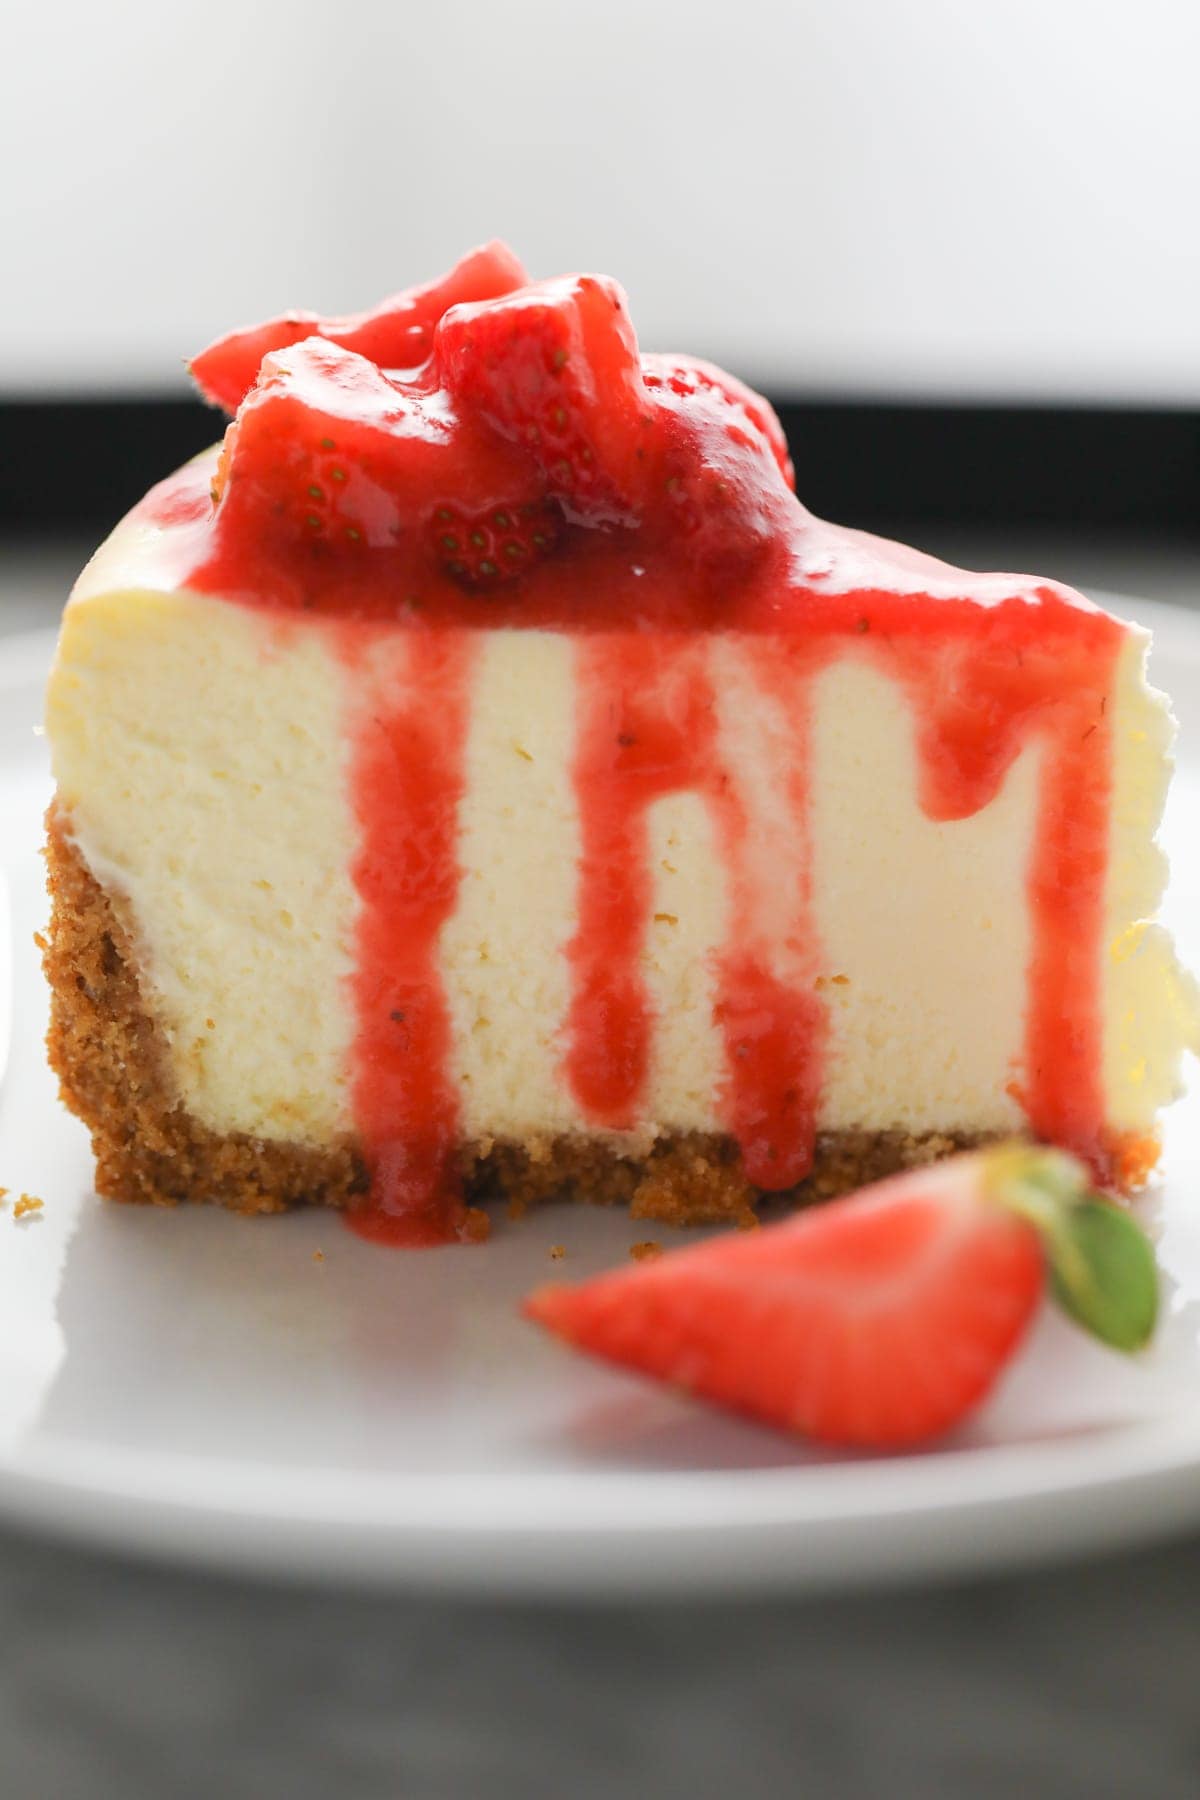 Strawberry Cheesecake slice